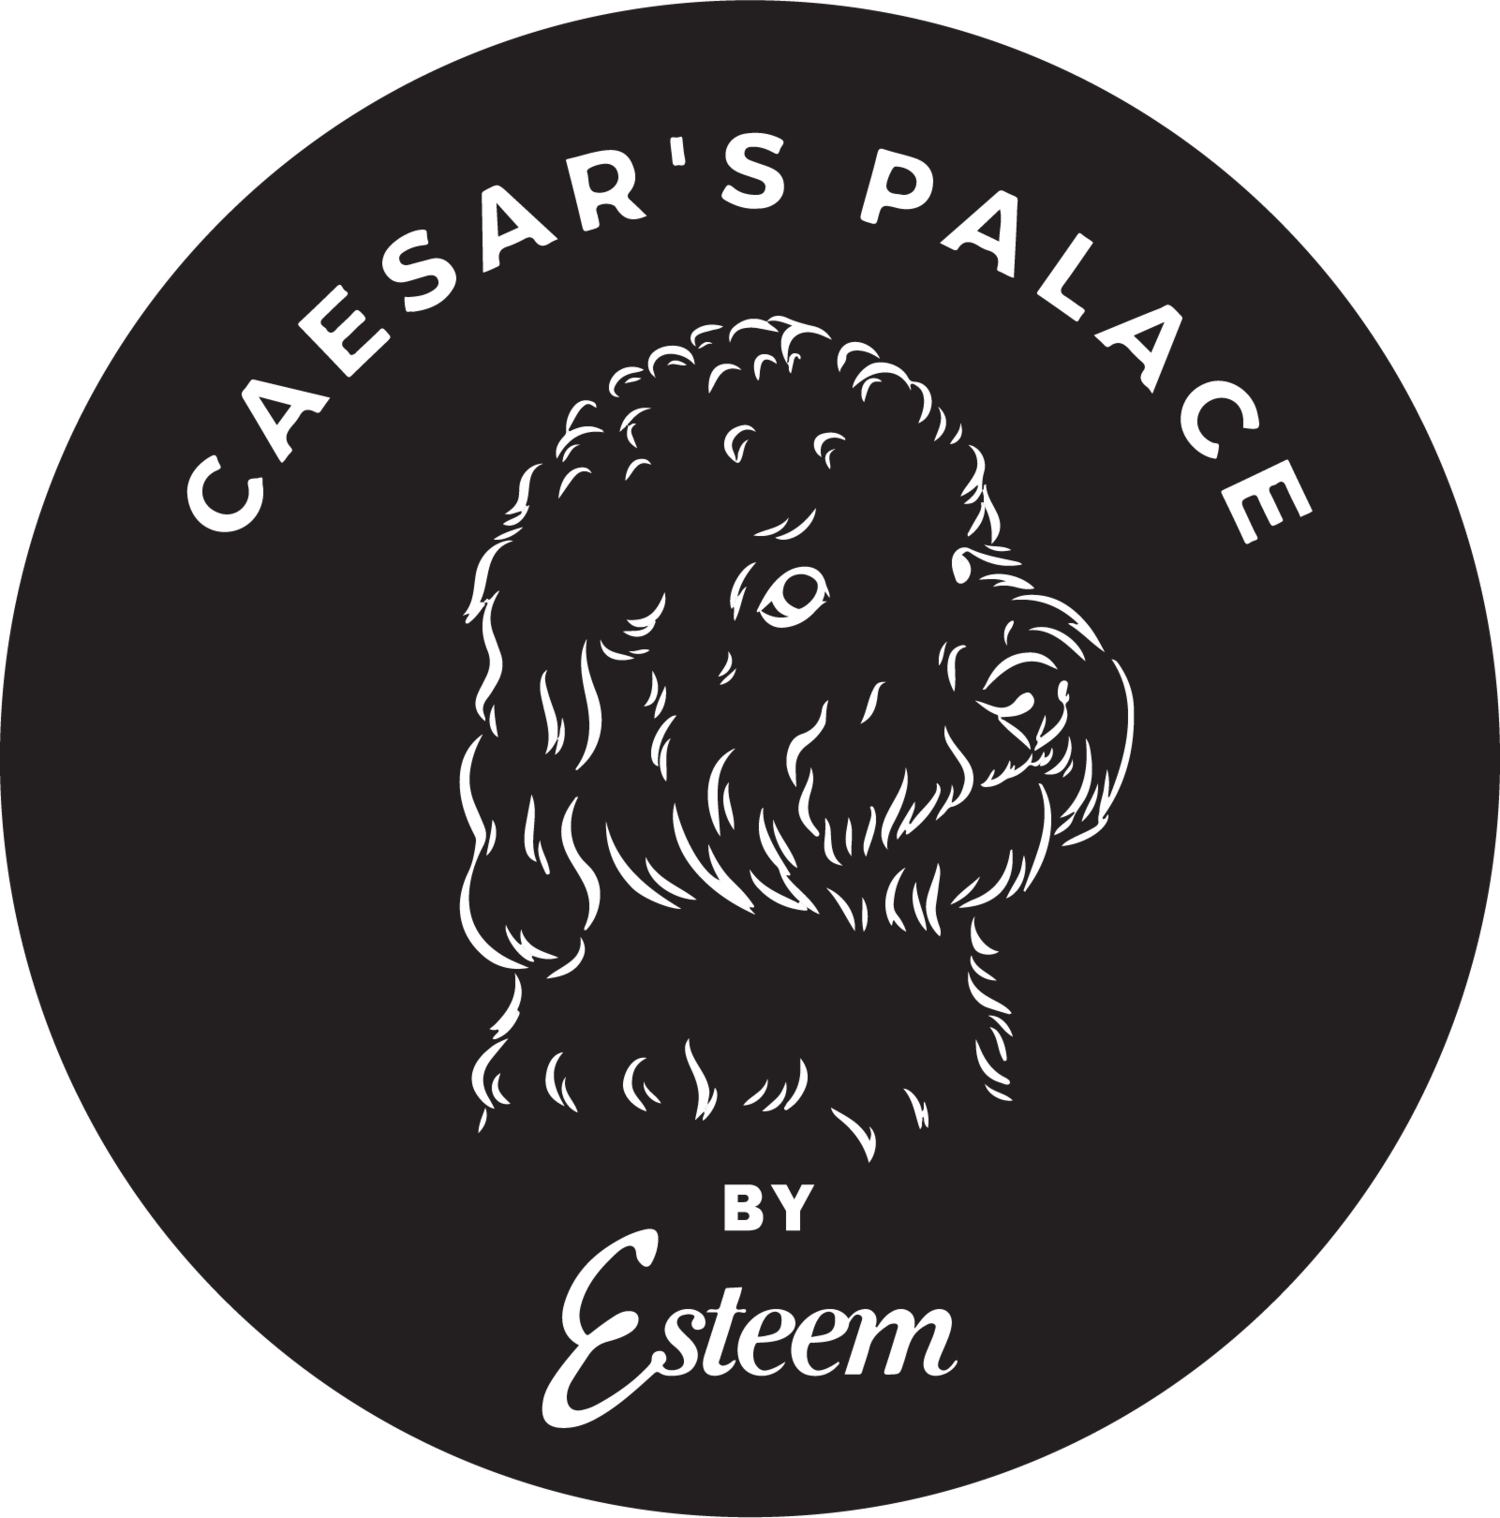 Caesar&#39;s Palace by Esteem